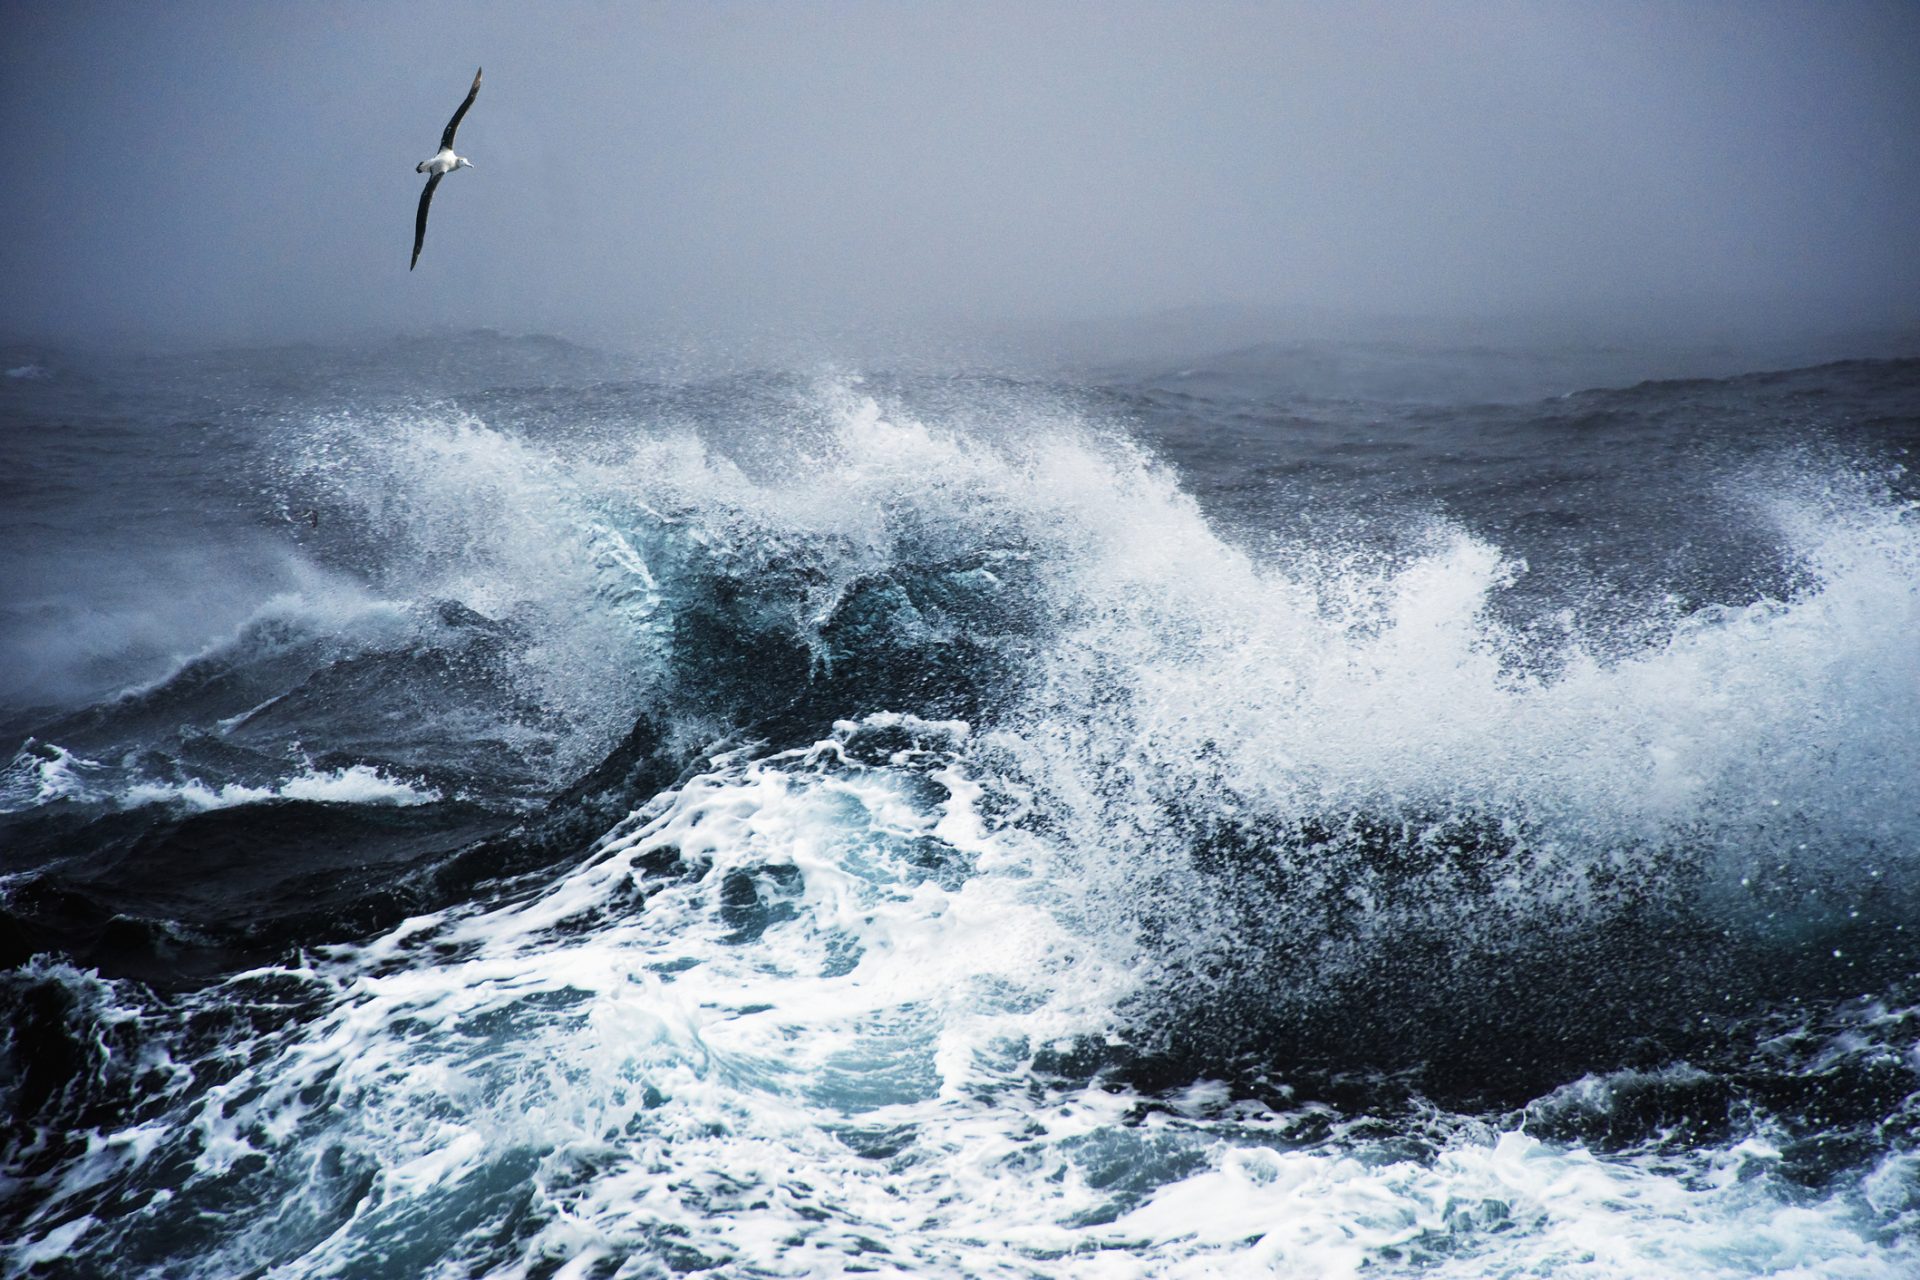 Le passage de Drake : découvrez la traversée maritime la plus dangereuse au monde